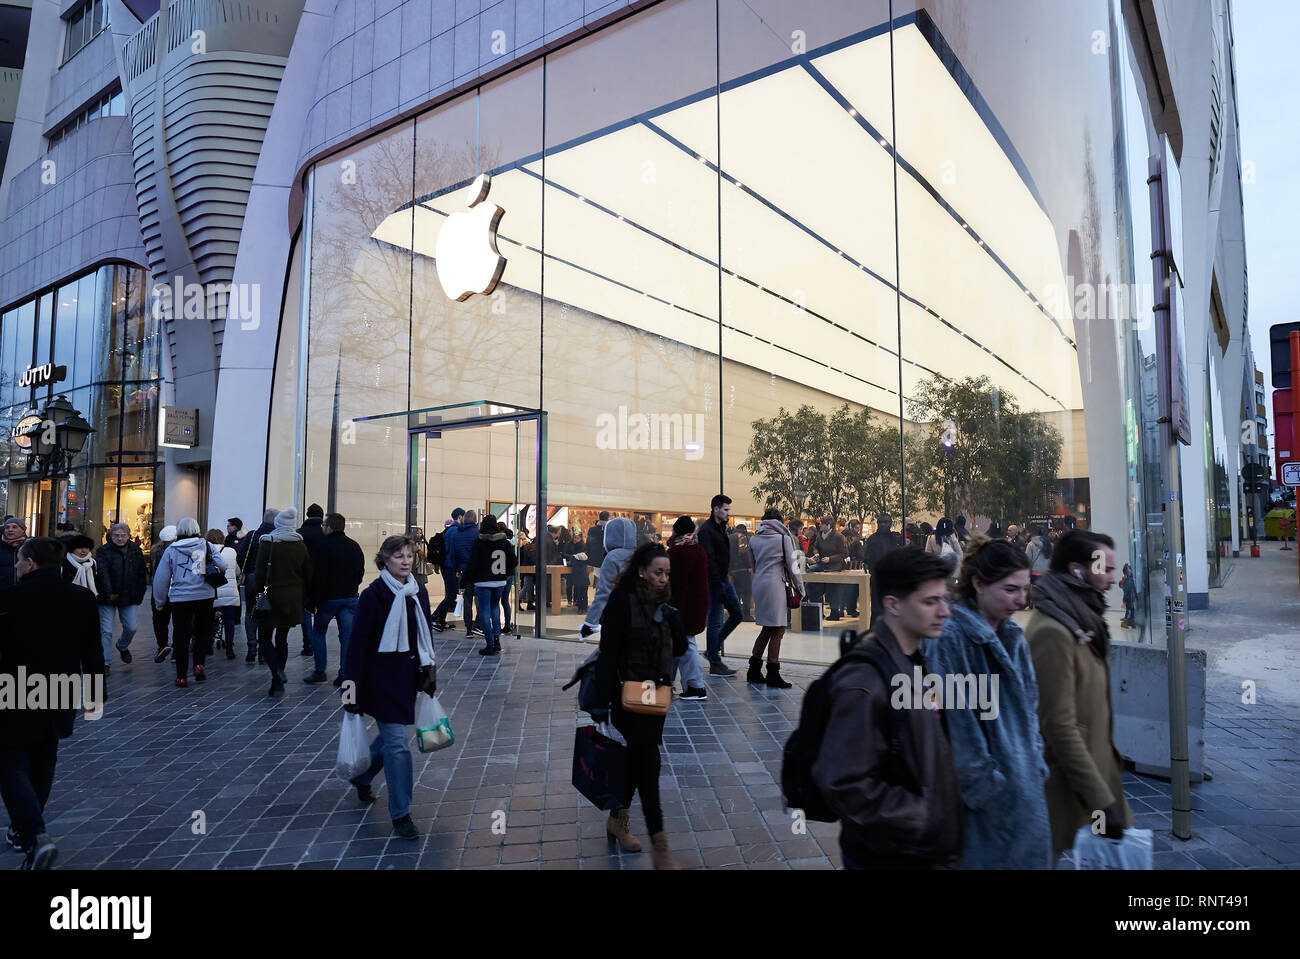 15.12.2018, Bruxelles, Bruxellescapitale, Belgio - passanti nella parte anteriore del negozio Apple Store su Avenue de la Toison d'Or. 00R181215D062CAROEX.JPG [MODELLO R Foto Stock